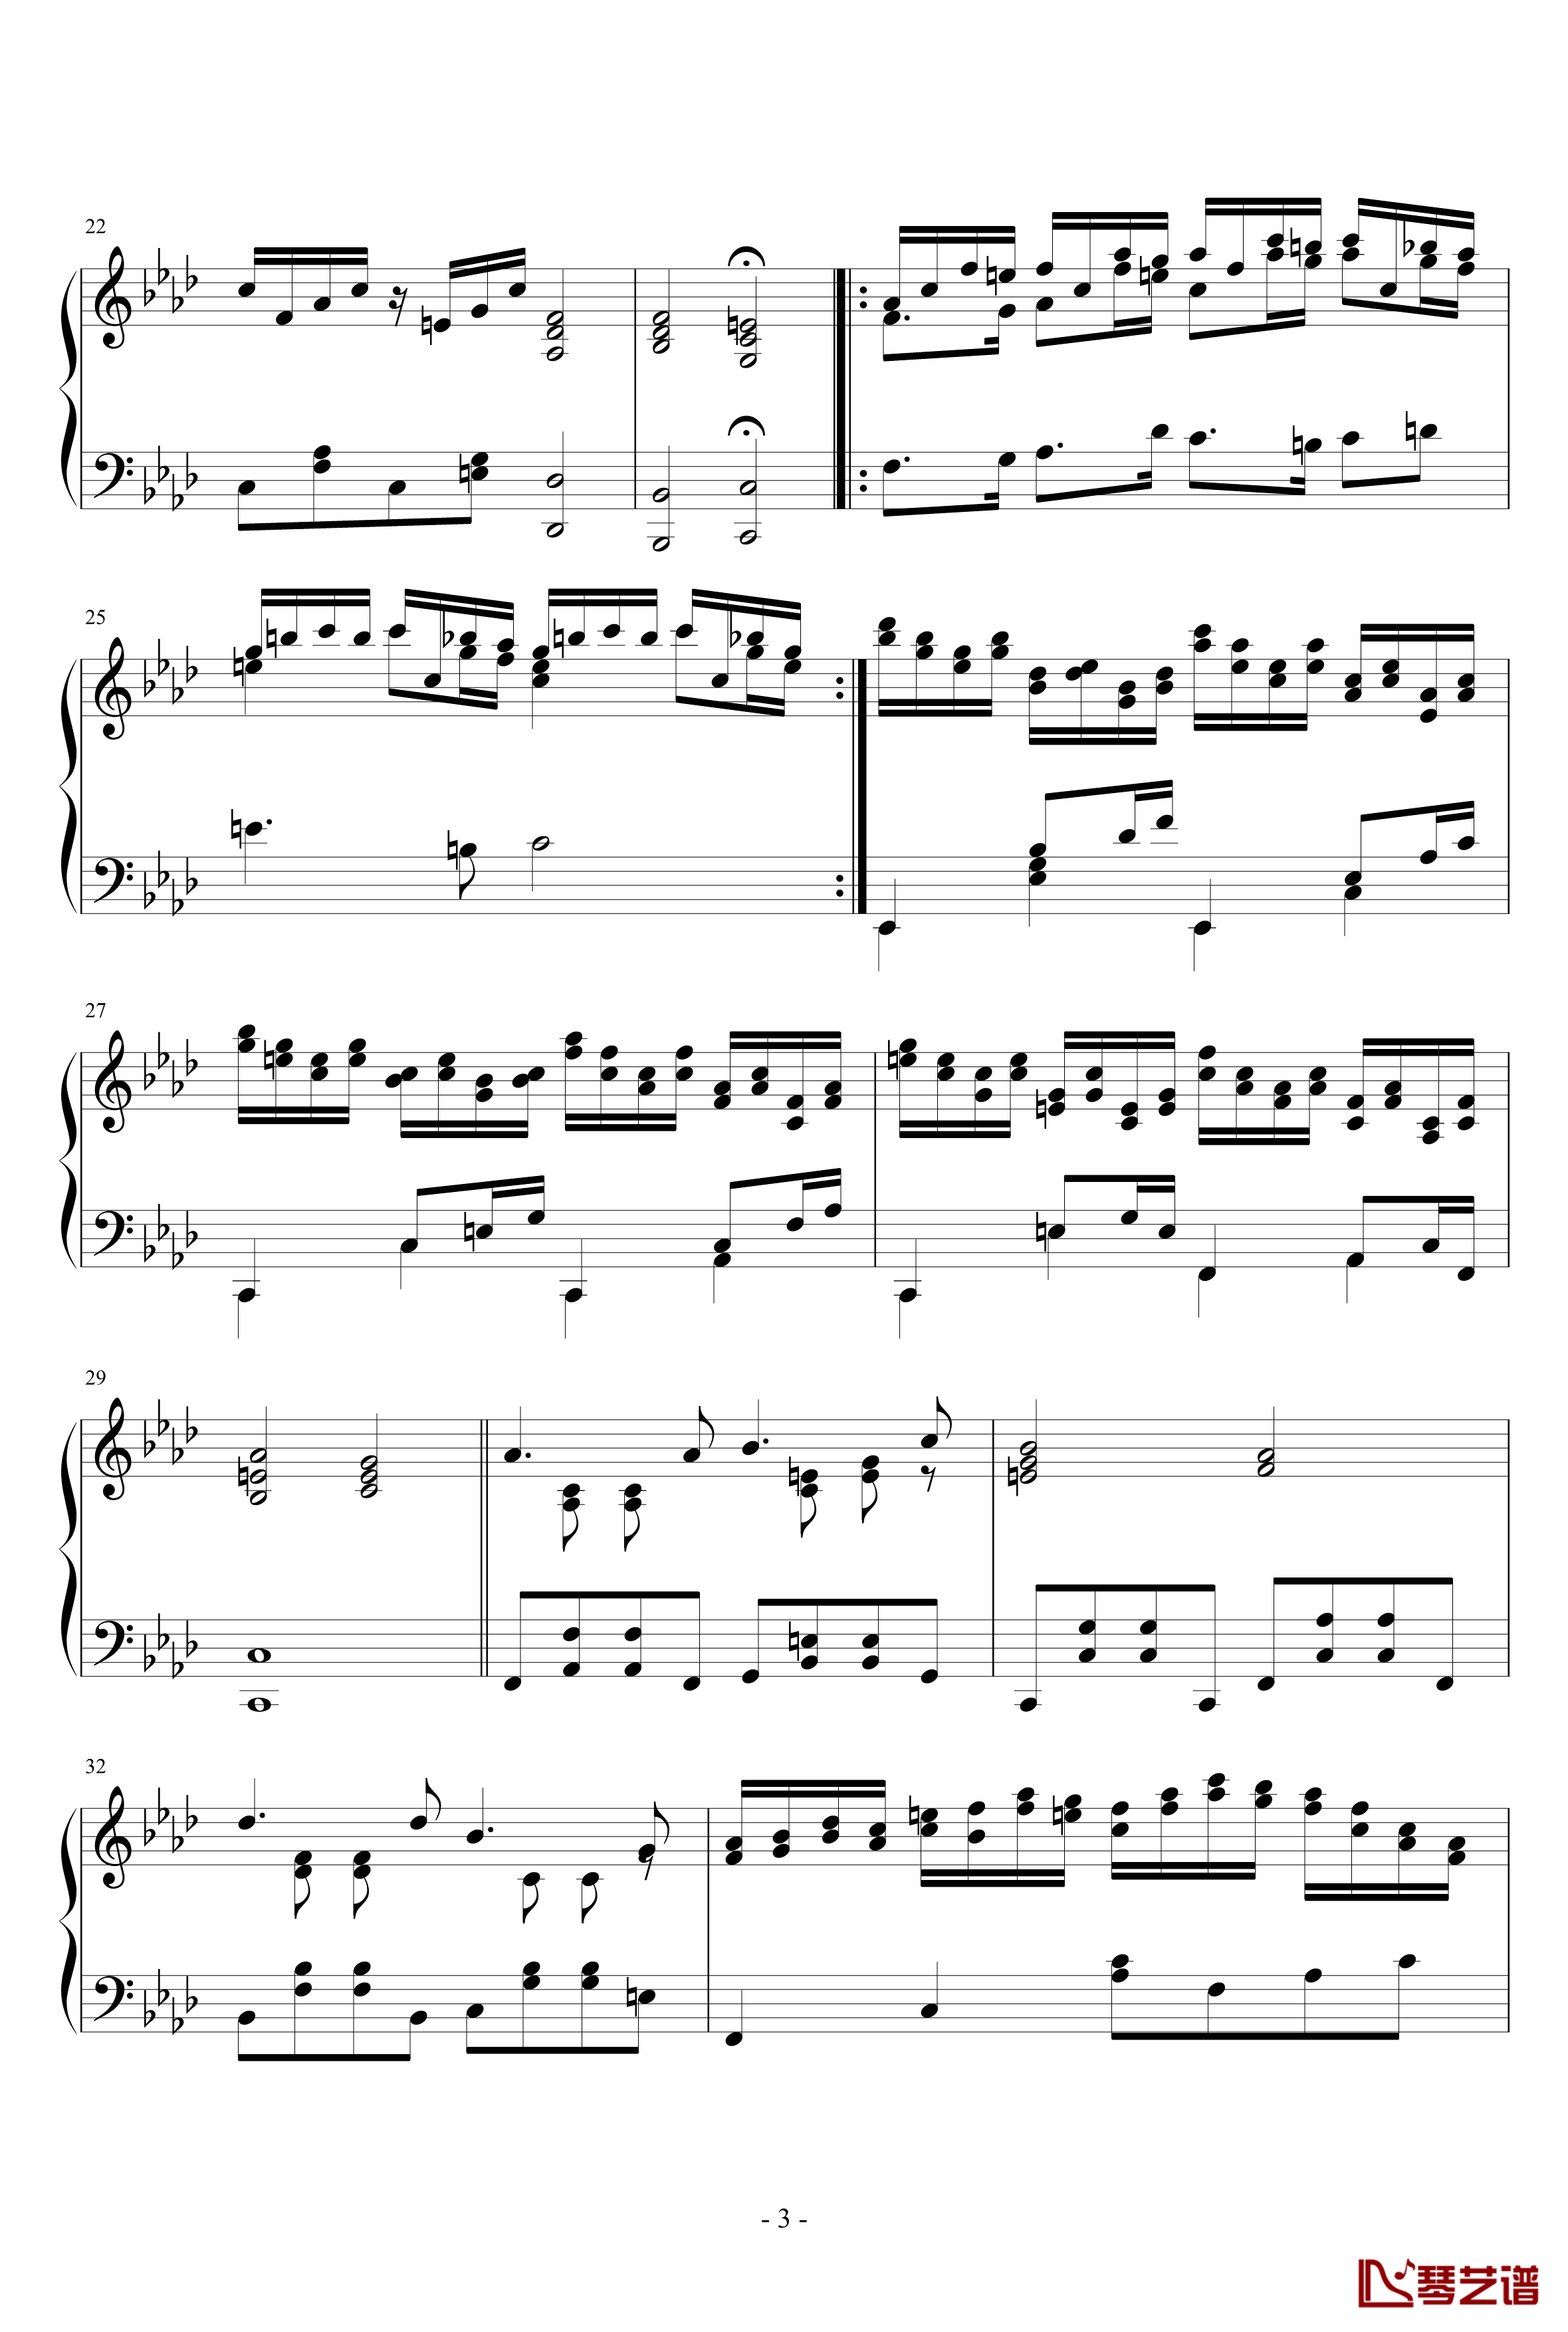 第二钢琴奏鸣曲第二乐章钢琴谱-nzh19343